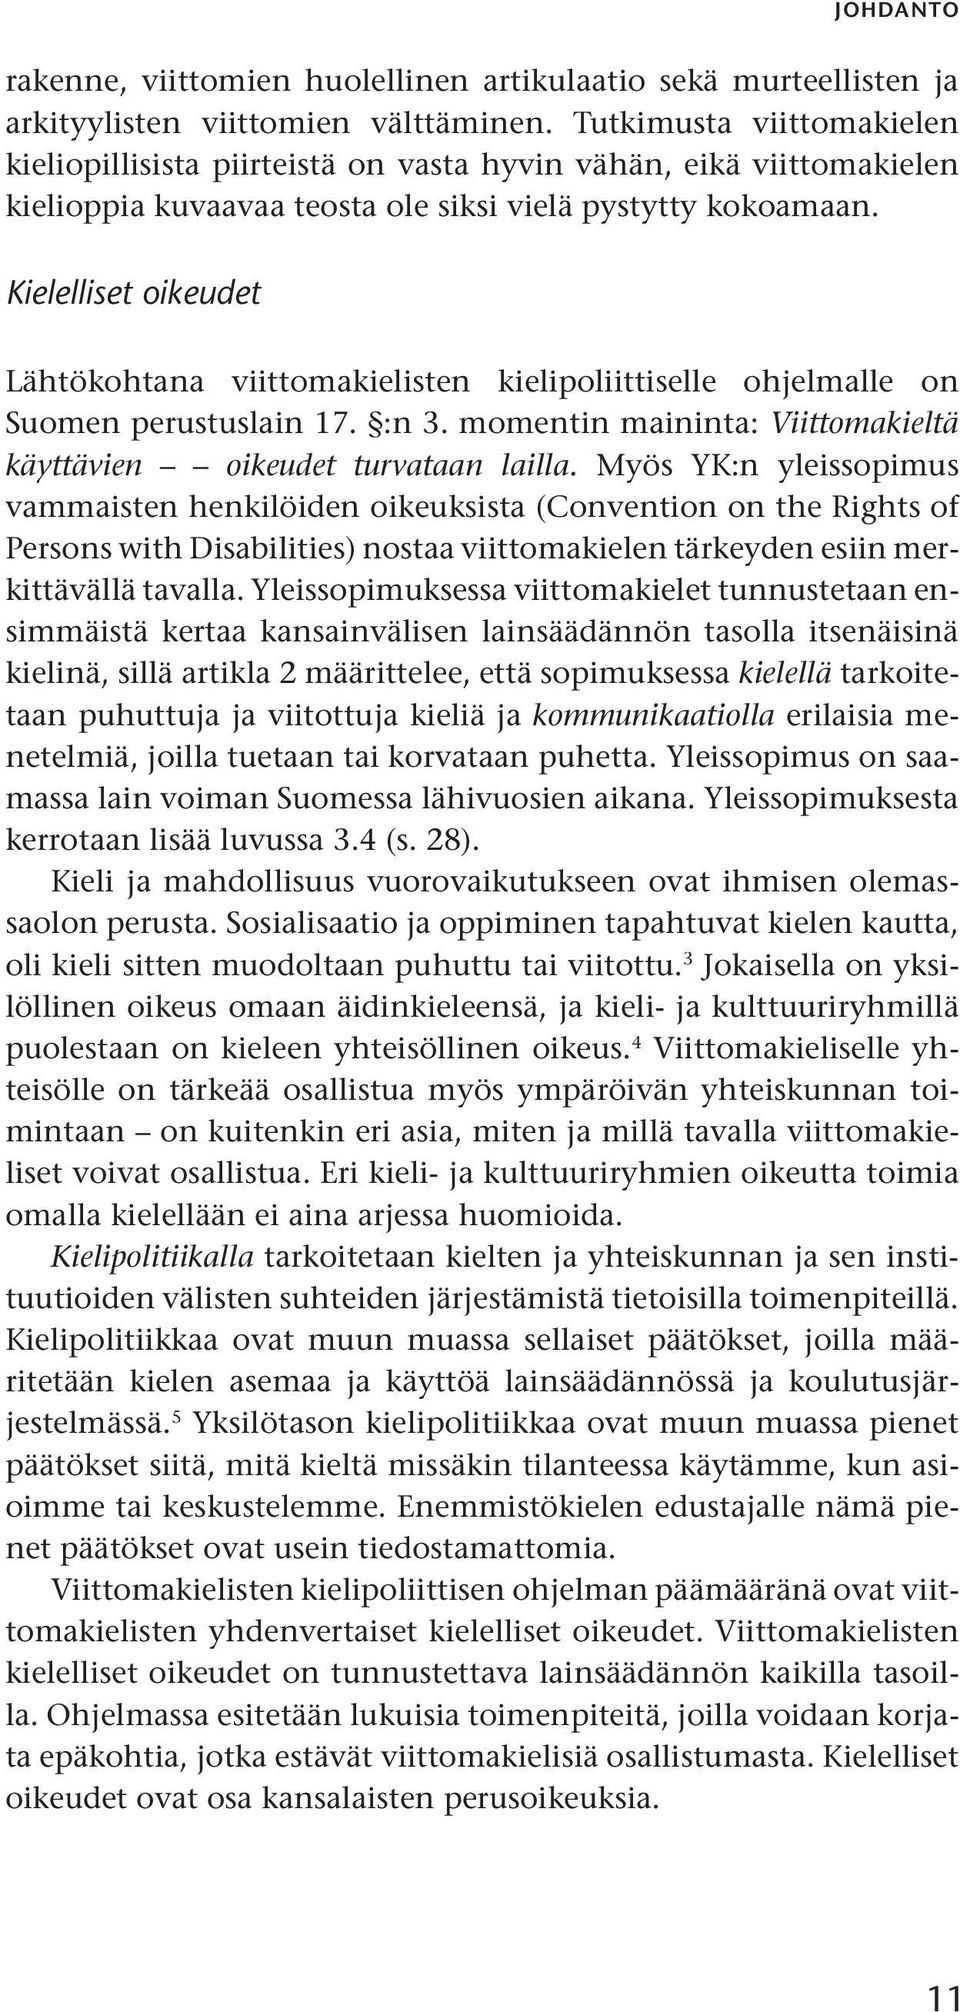 Kielelliset oikeudet Lähtökohtana viittomakielisten kielipoliittiselle ohjelmalle on Suomen perustuslain 17. :n 3. momentin maininta: Viittomakieltä käyttävien oikeudet turvataan lailla.